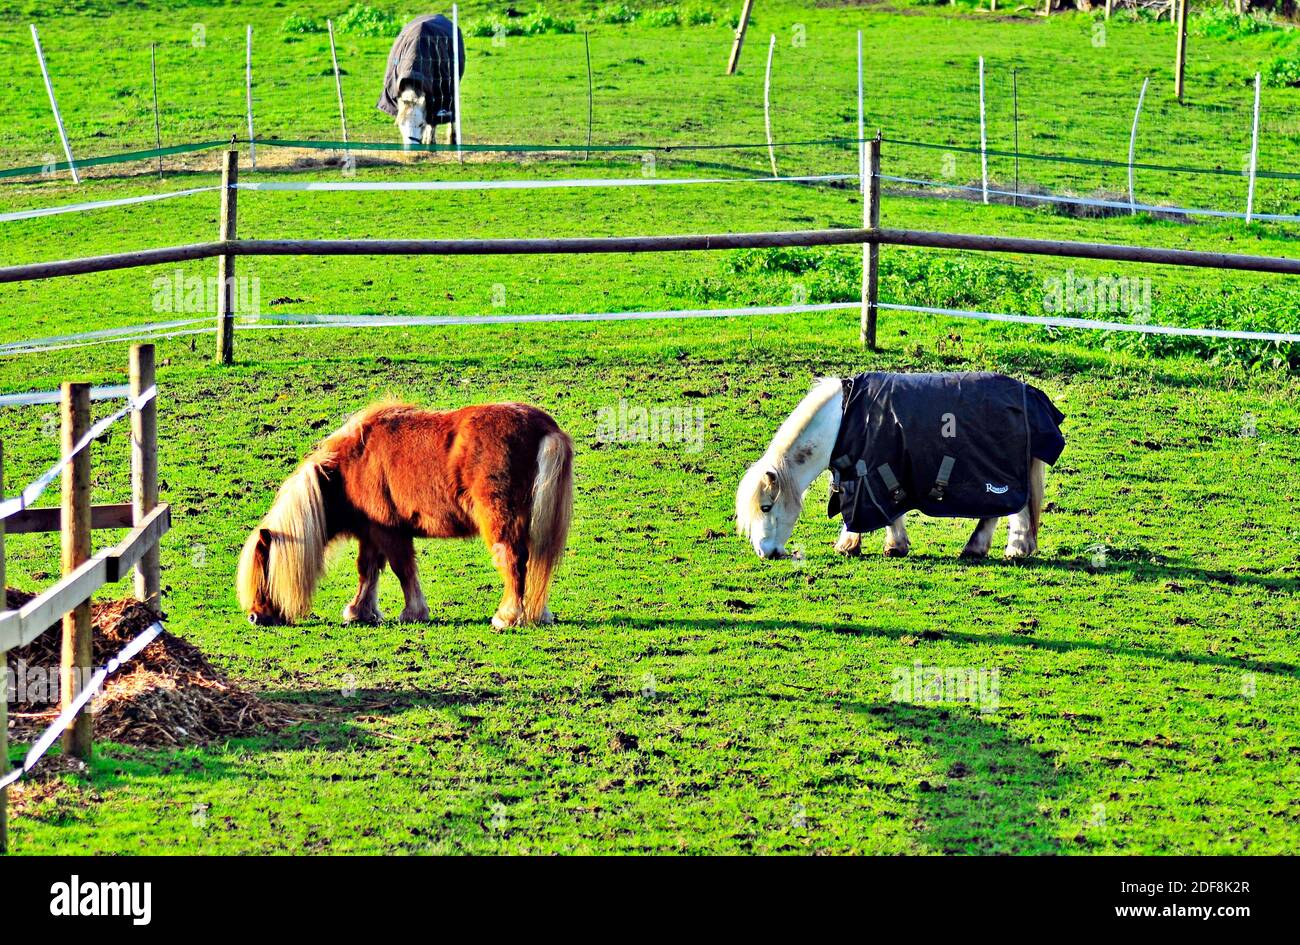 Chevaux paître dans le champ. Chevaux se nourrissant en Angleterre rurale. Chevaux noirs et blancs dans un paysage magnifique. Groupe d'animaux domestiques dans un pré. Banque D'Images